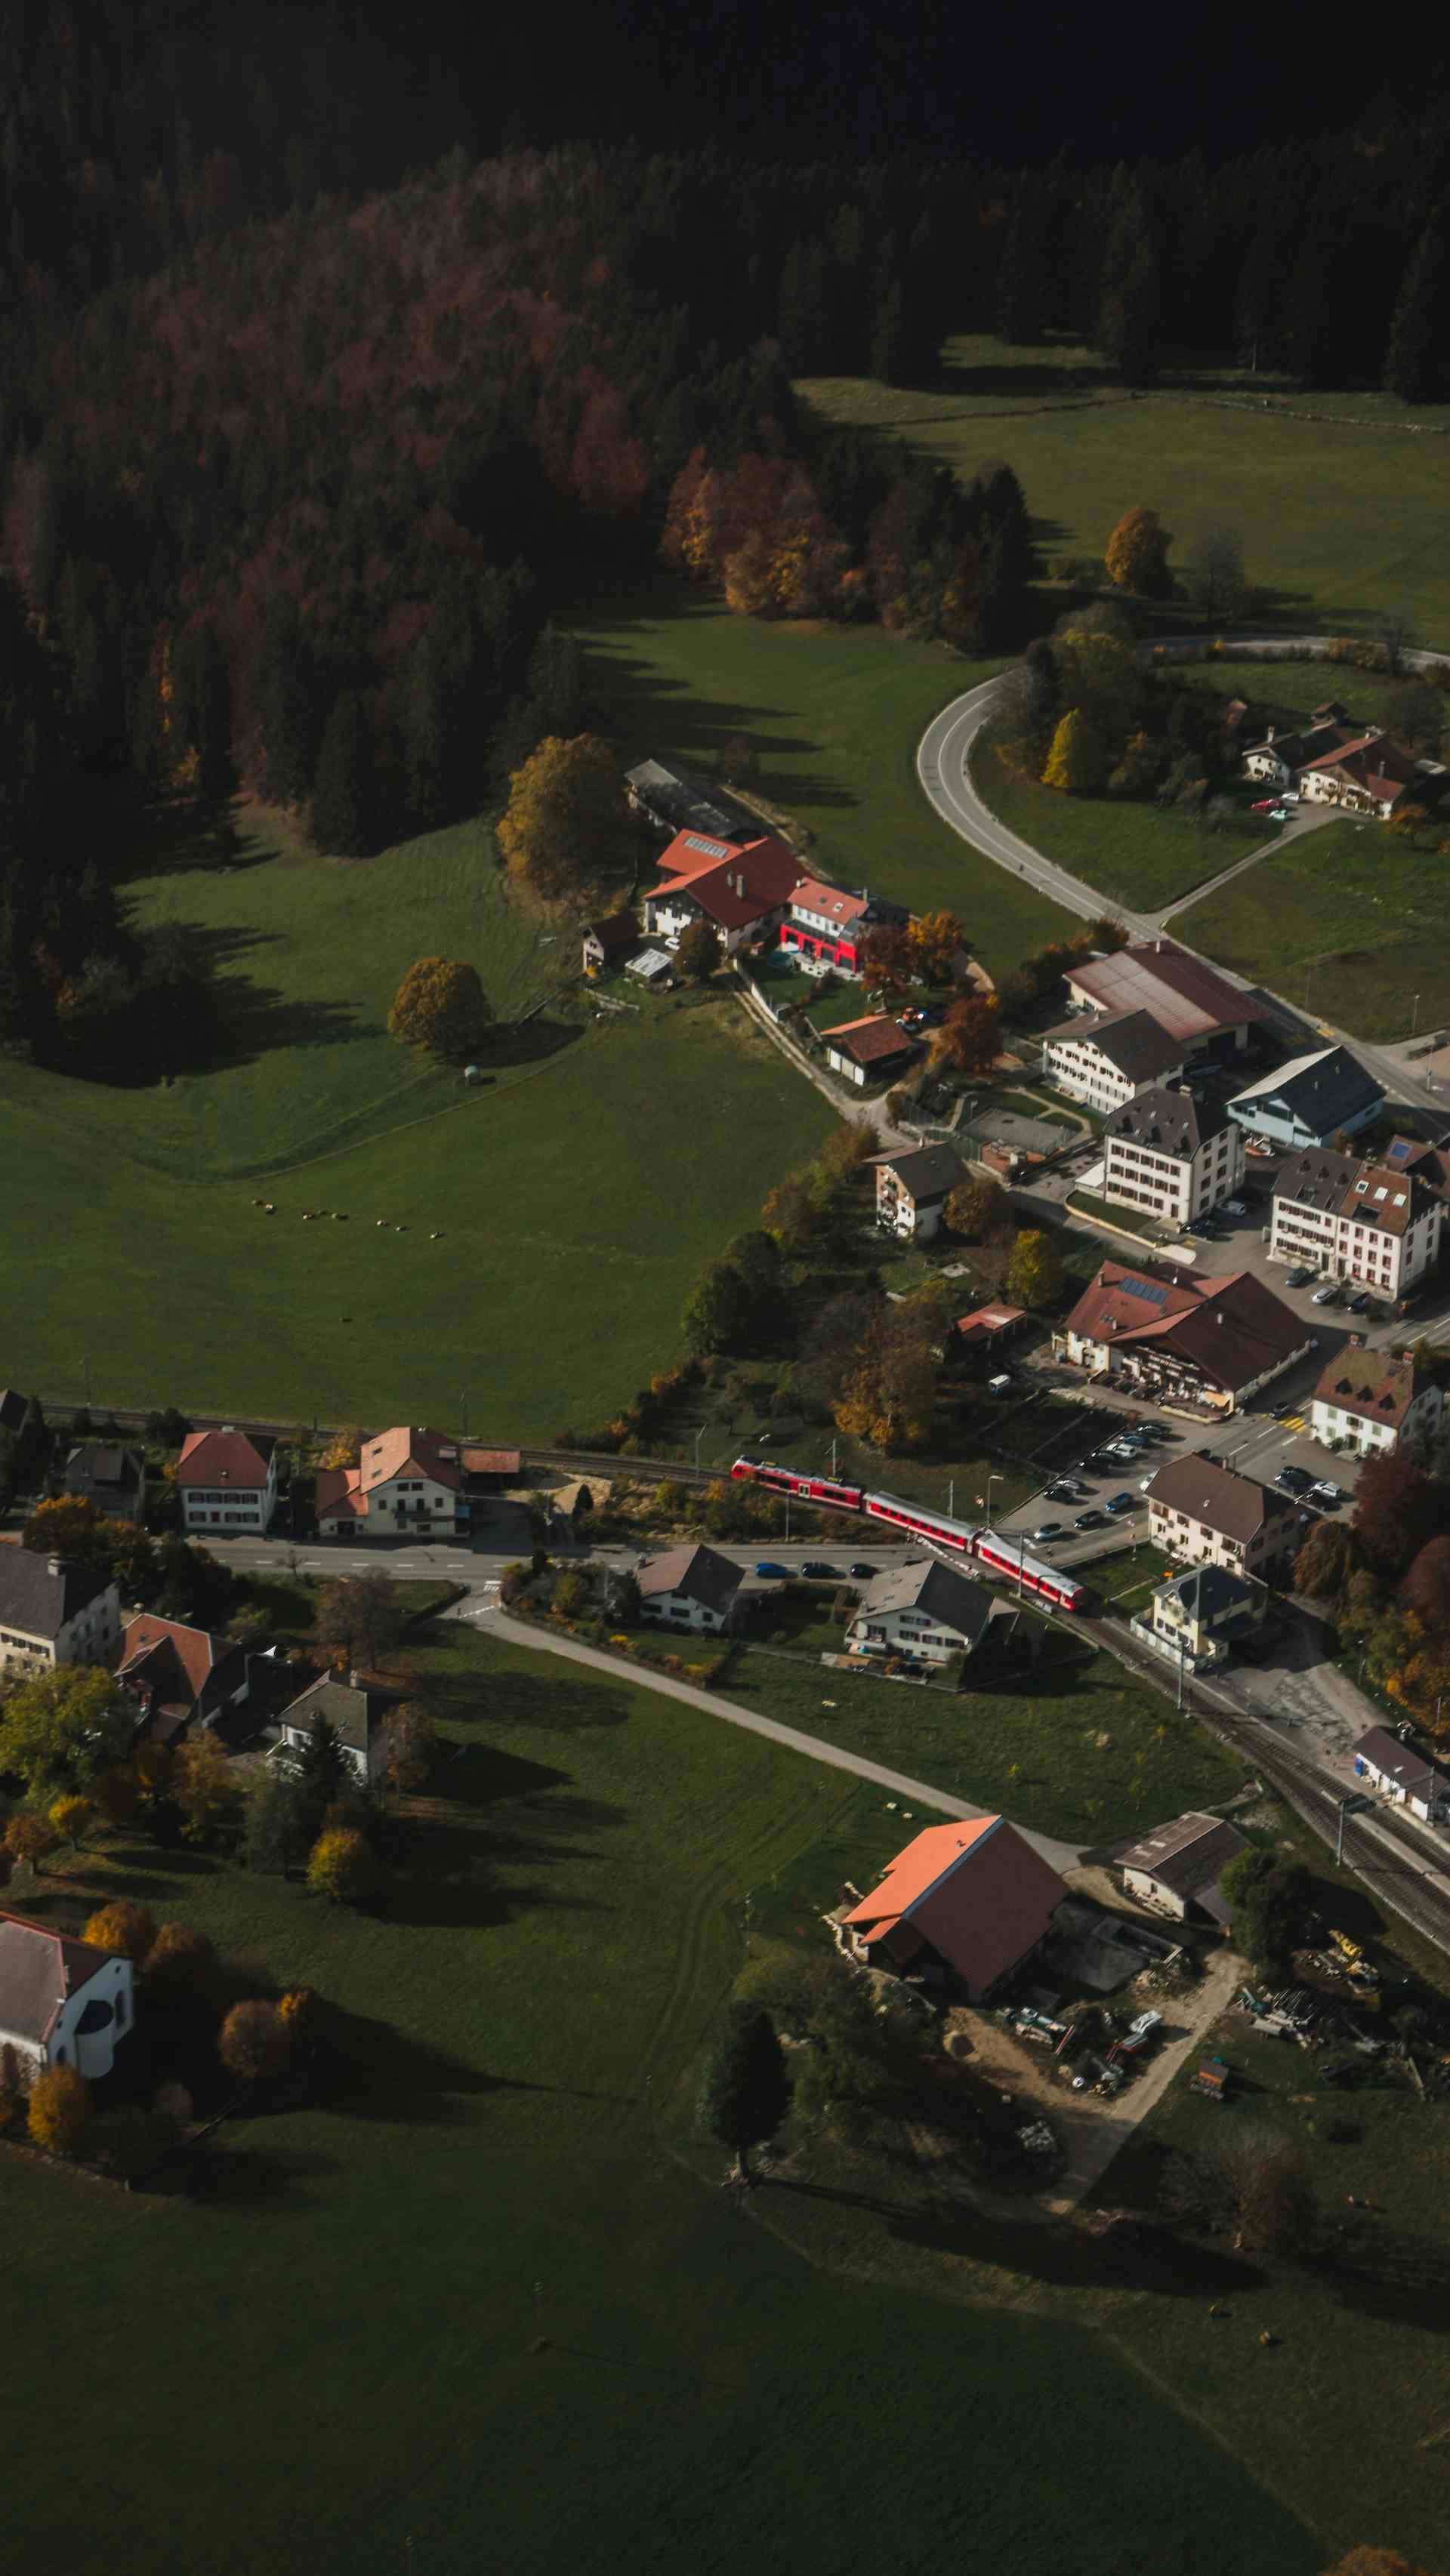 Mont-Dedos, produttore nel Les Ecorcheresses canton Giura in Svizzera